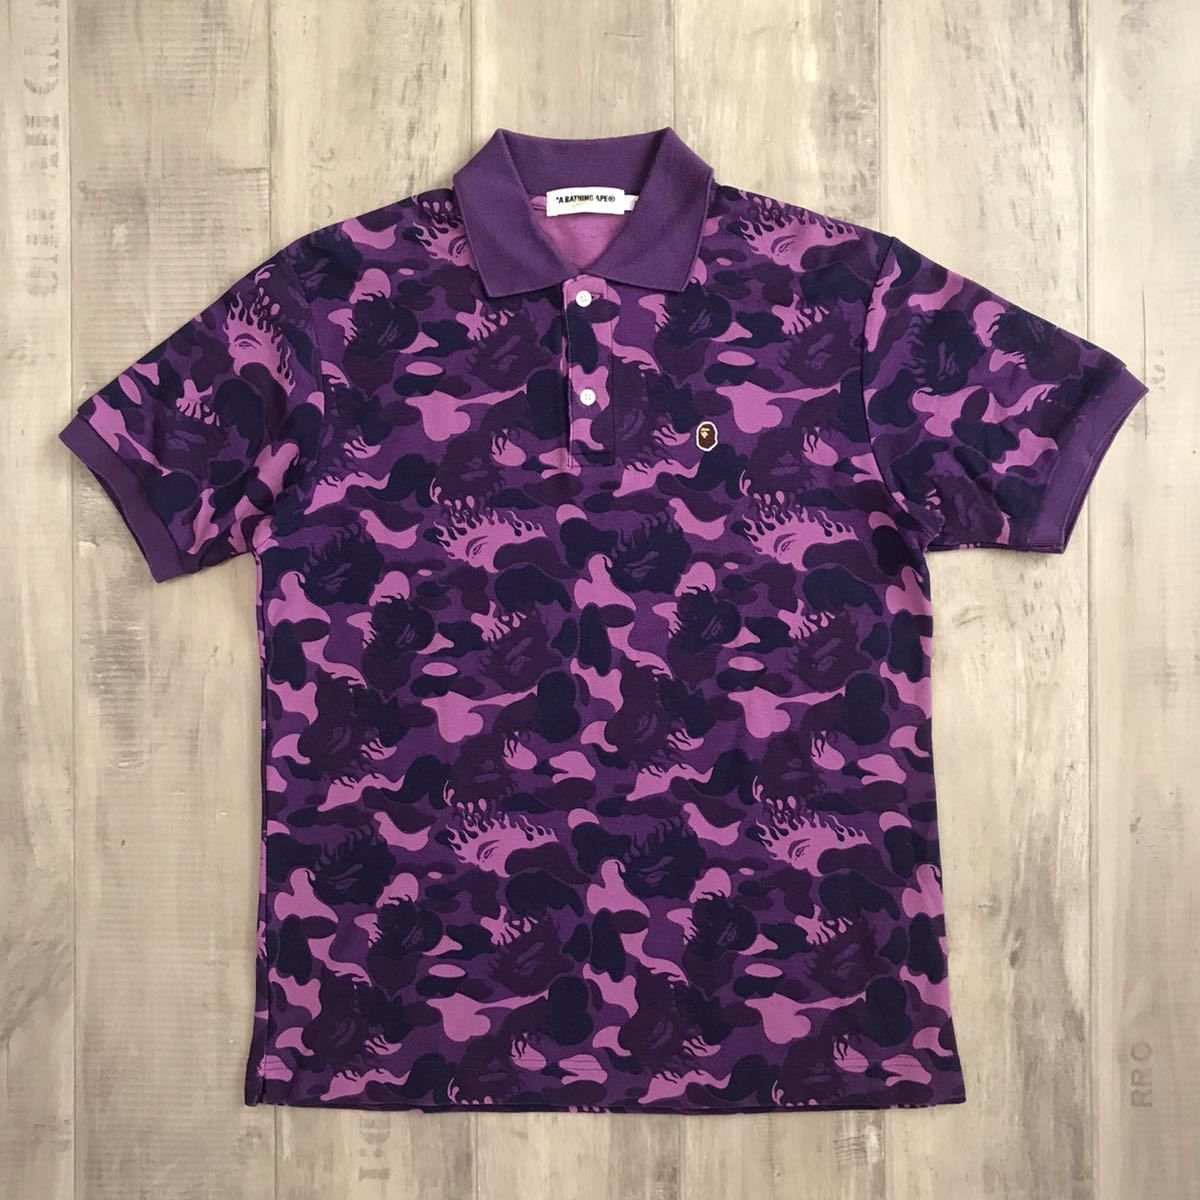 Bape BAPE fire camo polo shirt purple camo flame a bathing ape Size US M / EU 48-50 / 2 - 1 Preview